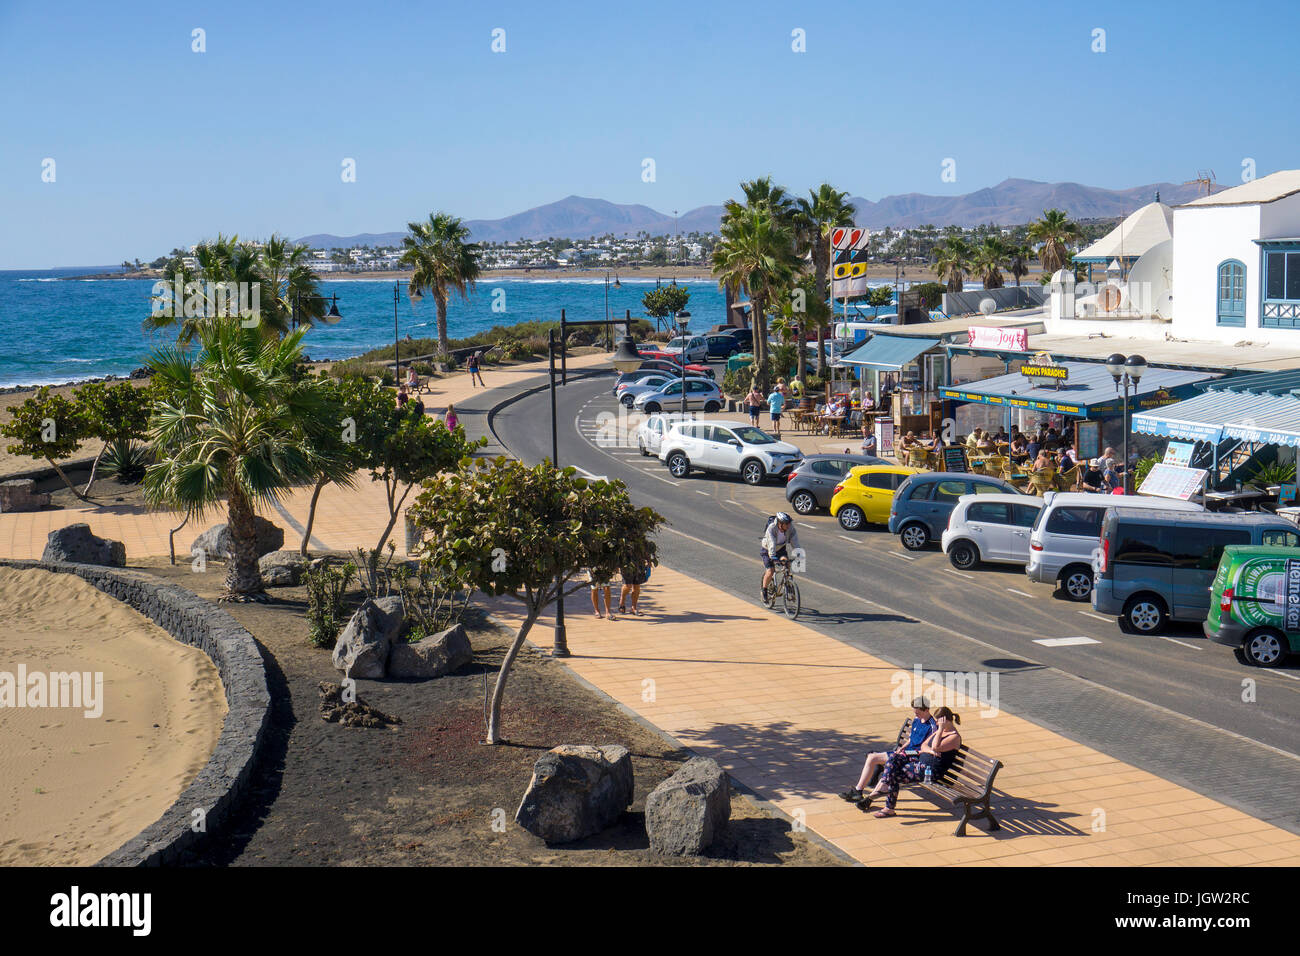 Promenade at Playa Matagorda, grande plage de Puerto del Carmen, Lanzarote, îles Canaries, Espagne, Europe Banque D'Images